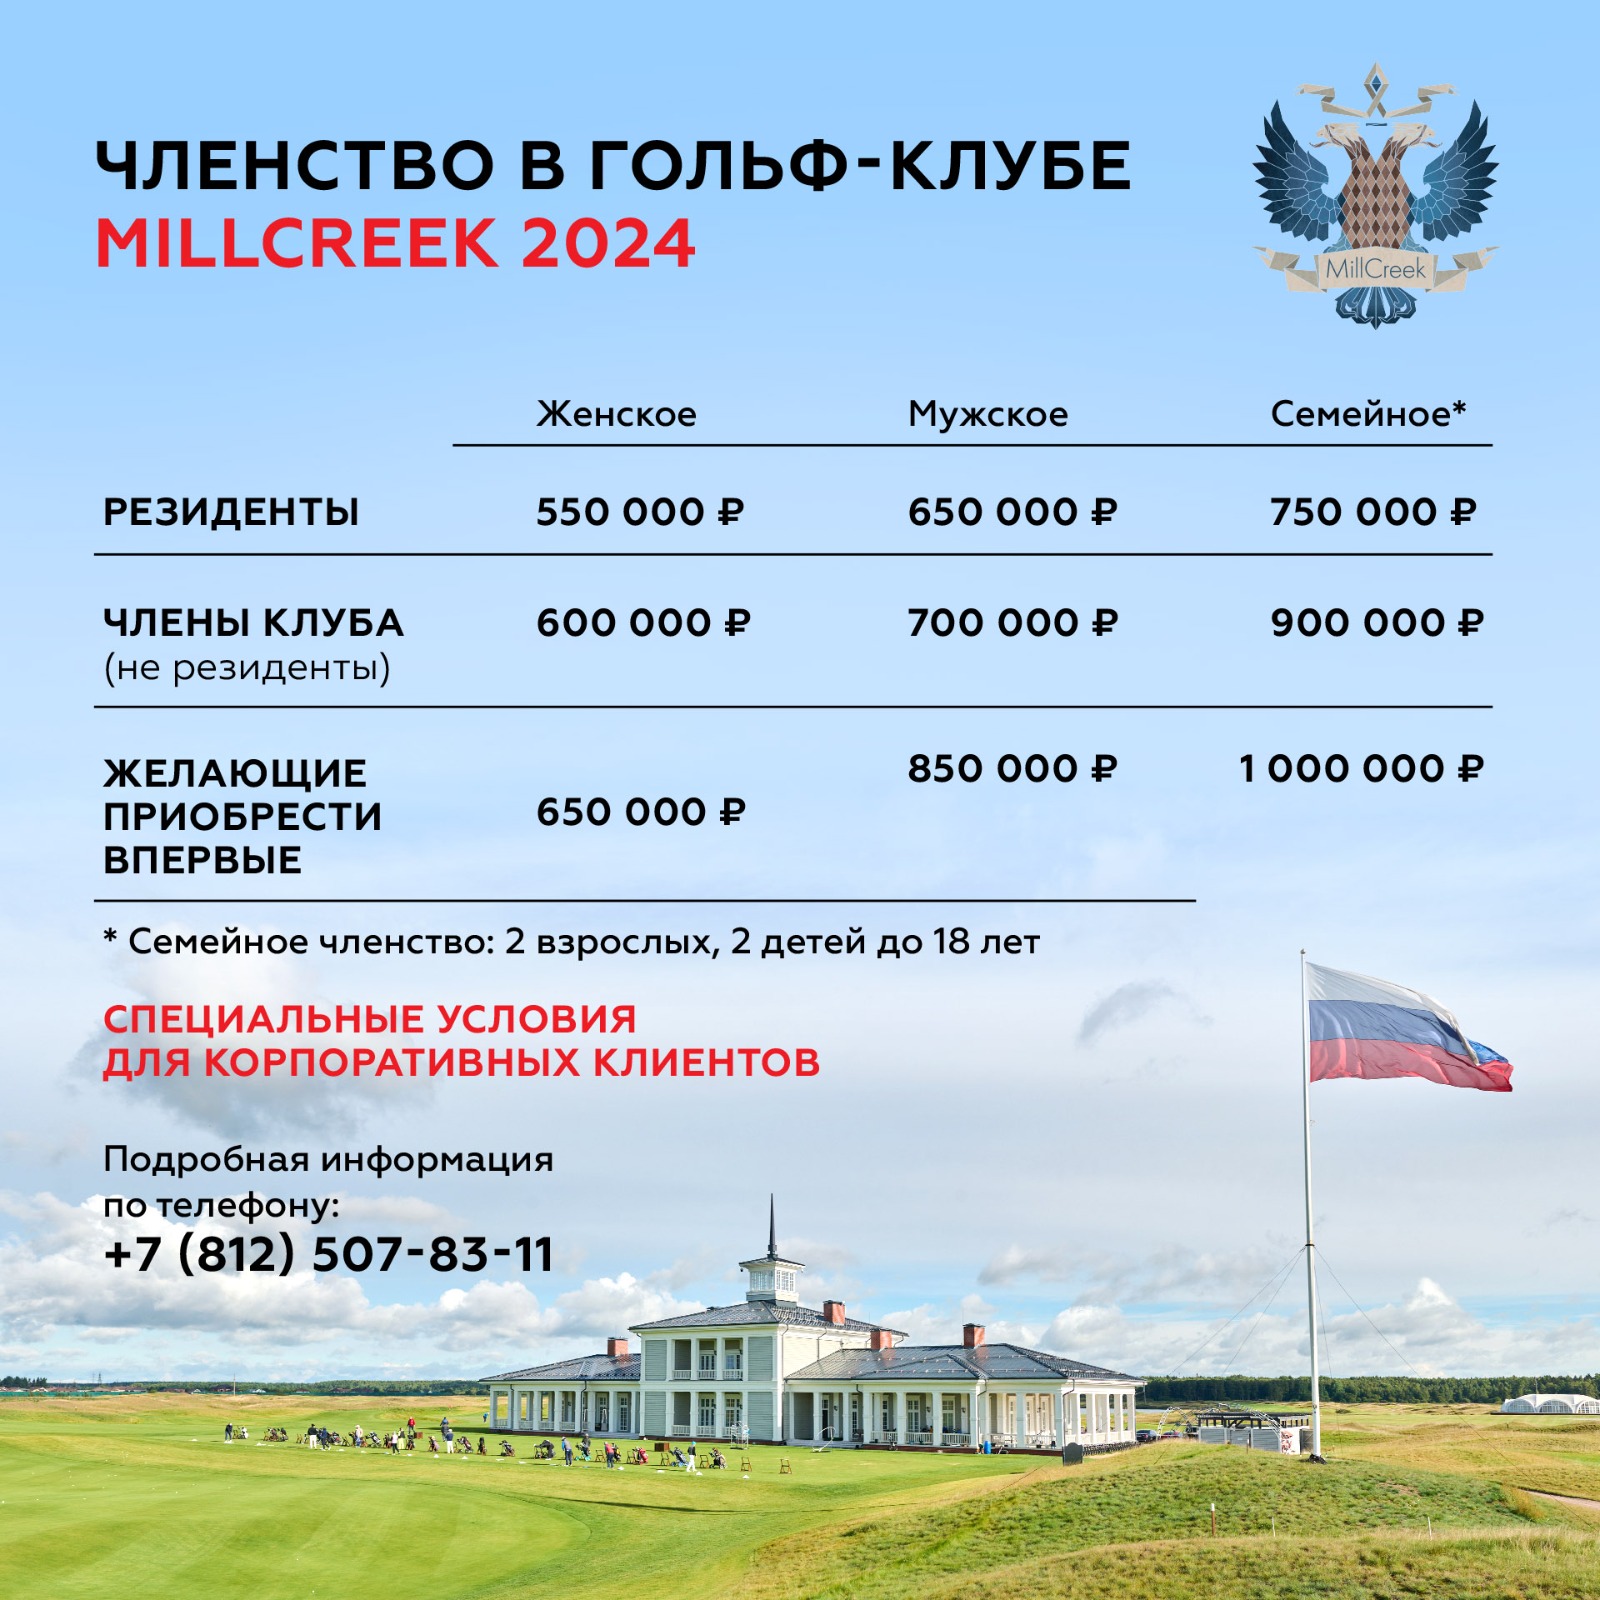 Членства на 2024 гольф-сезон